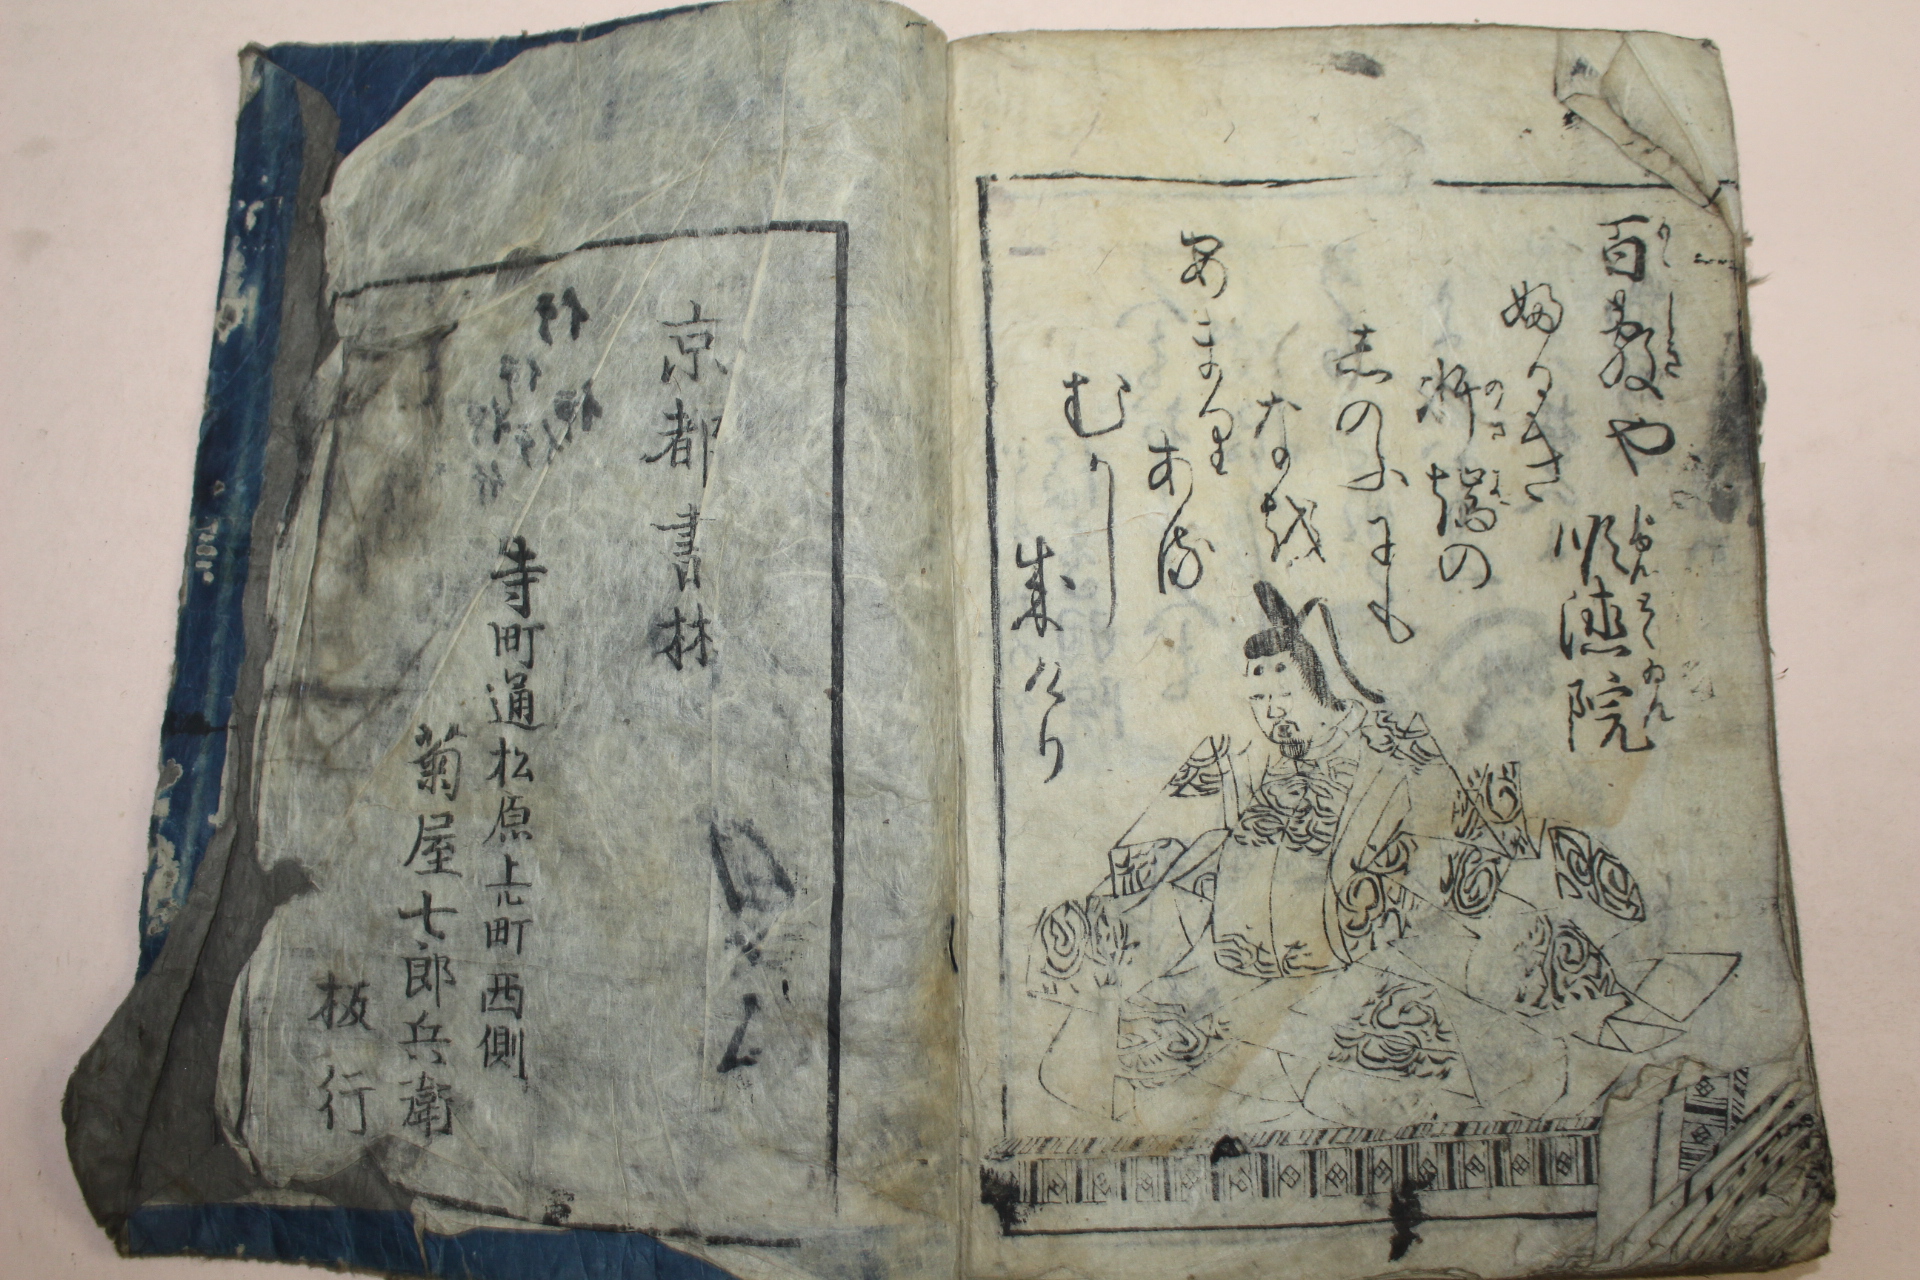 에도시기 일본목판본 어가백인백수(御家百人百首)